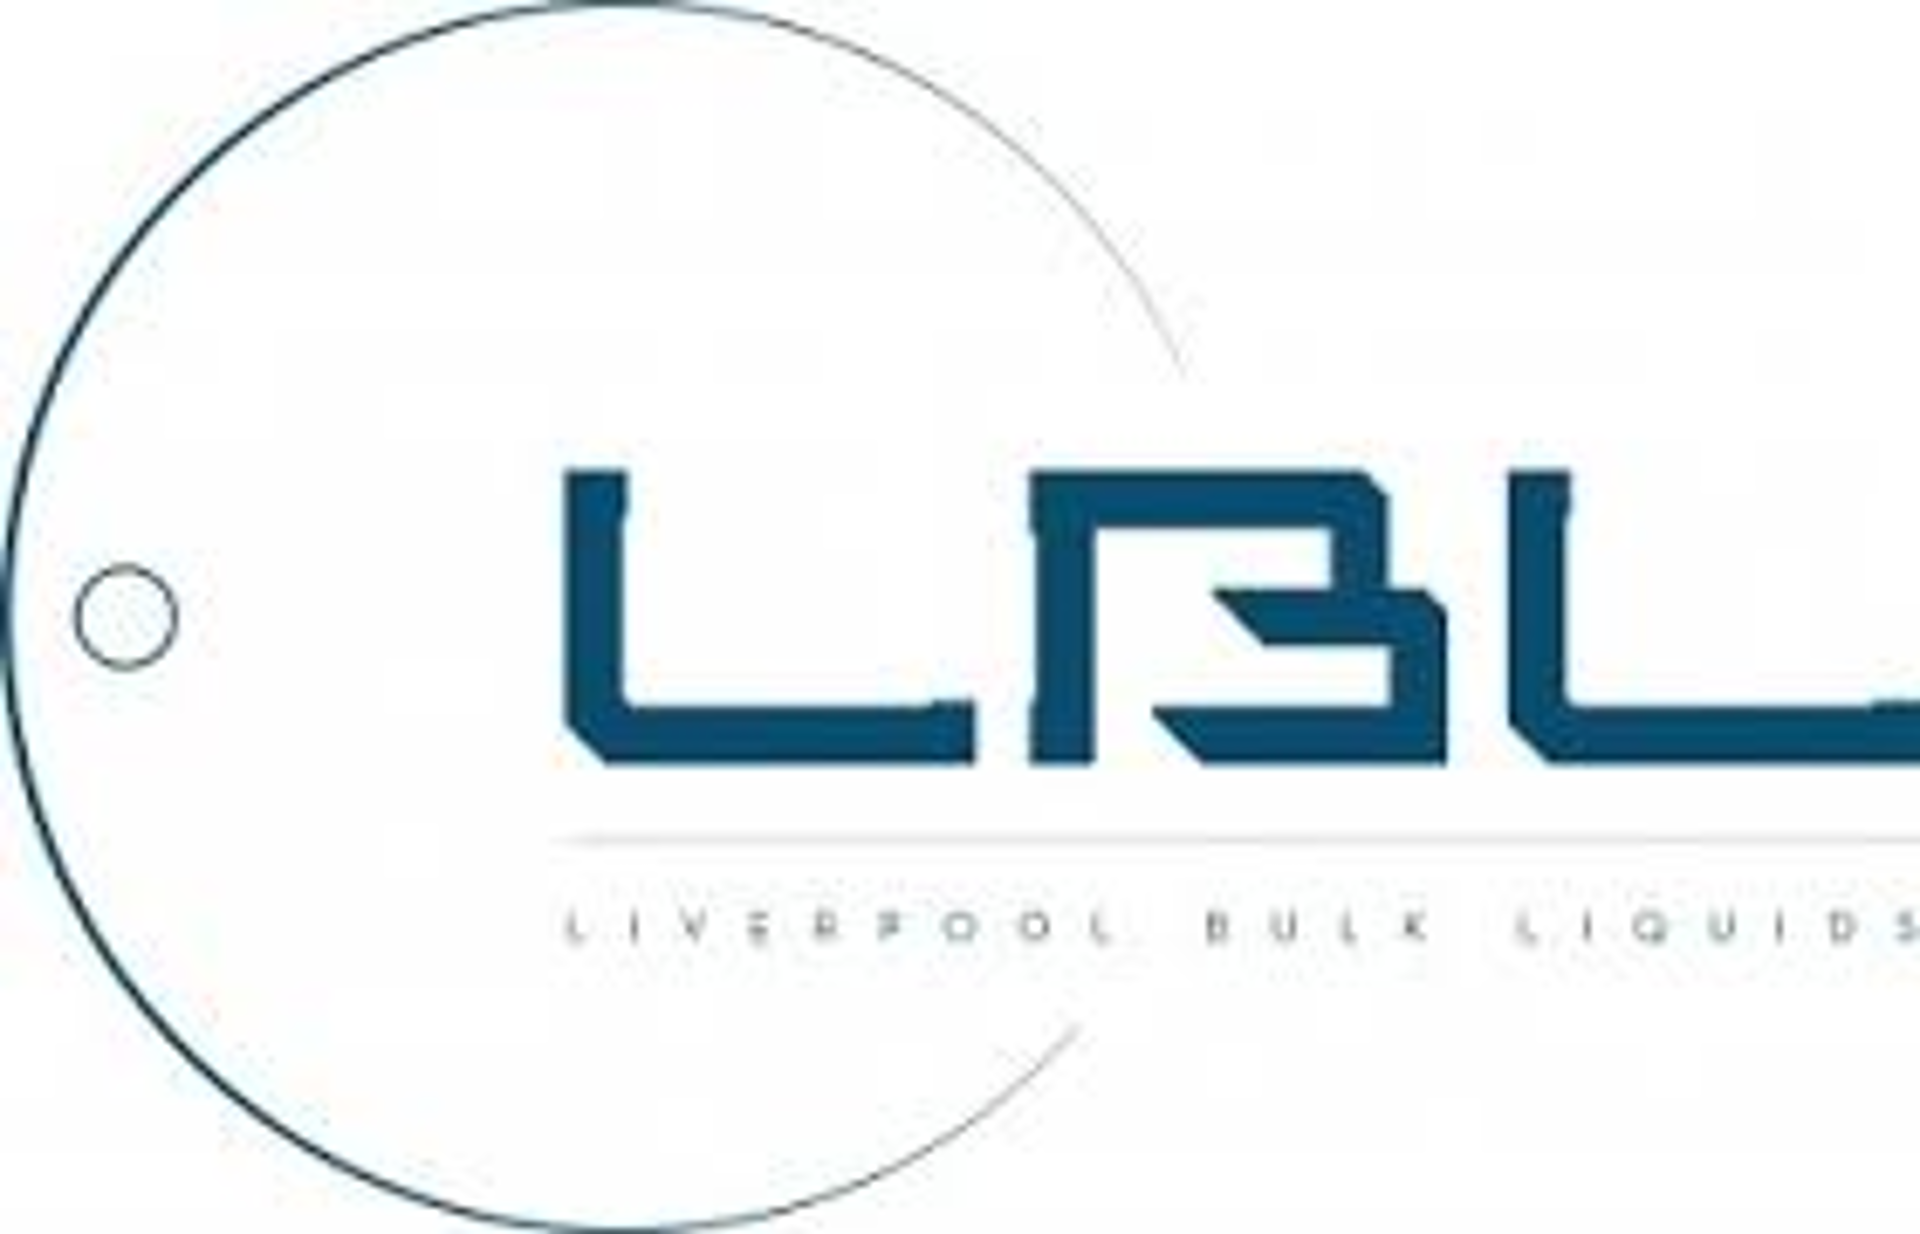 Liverpool Bulk Liquids